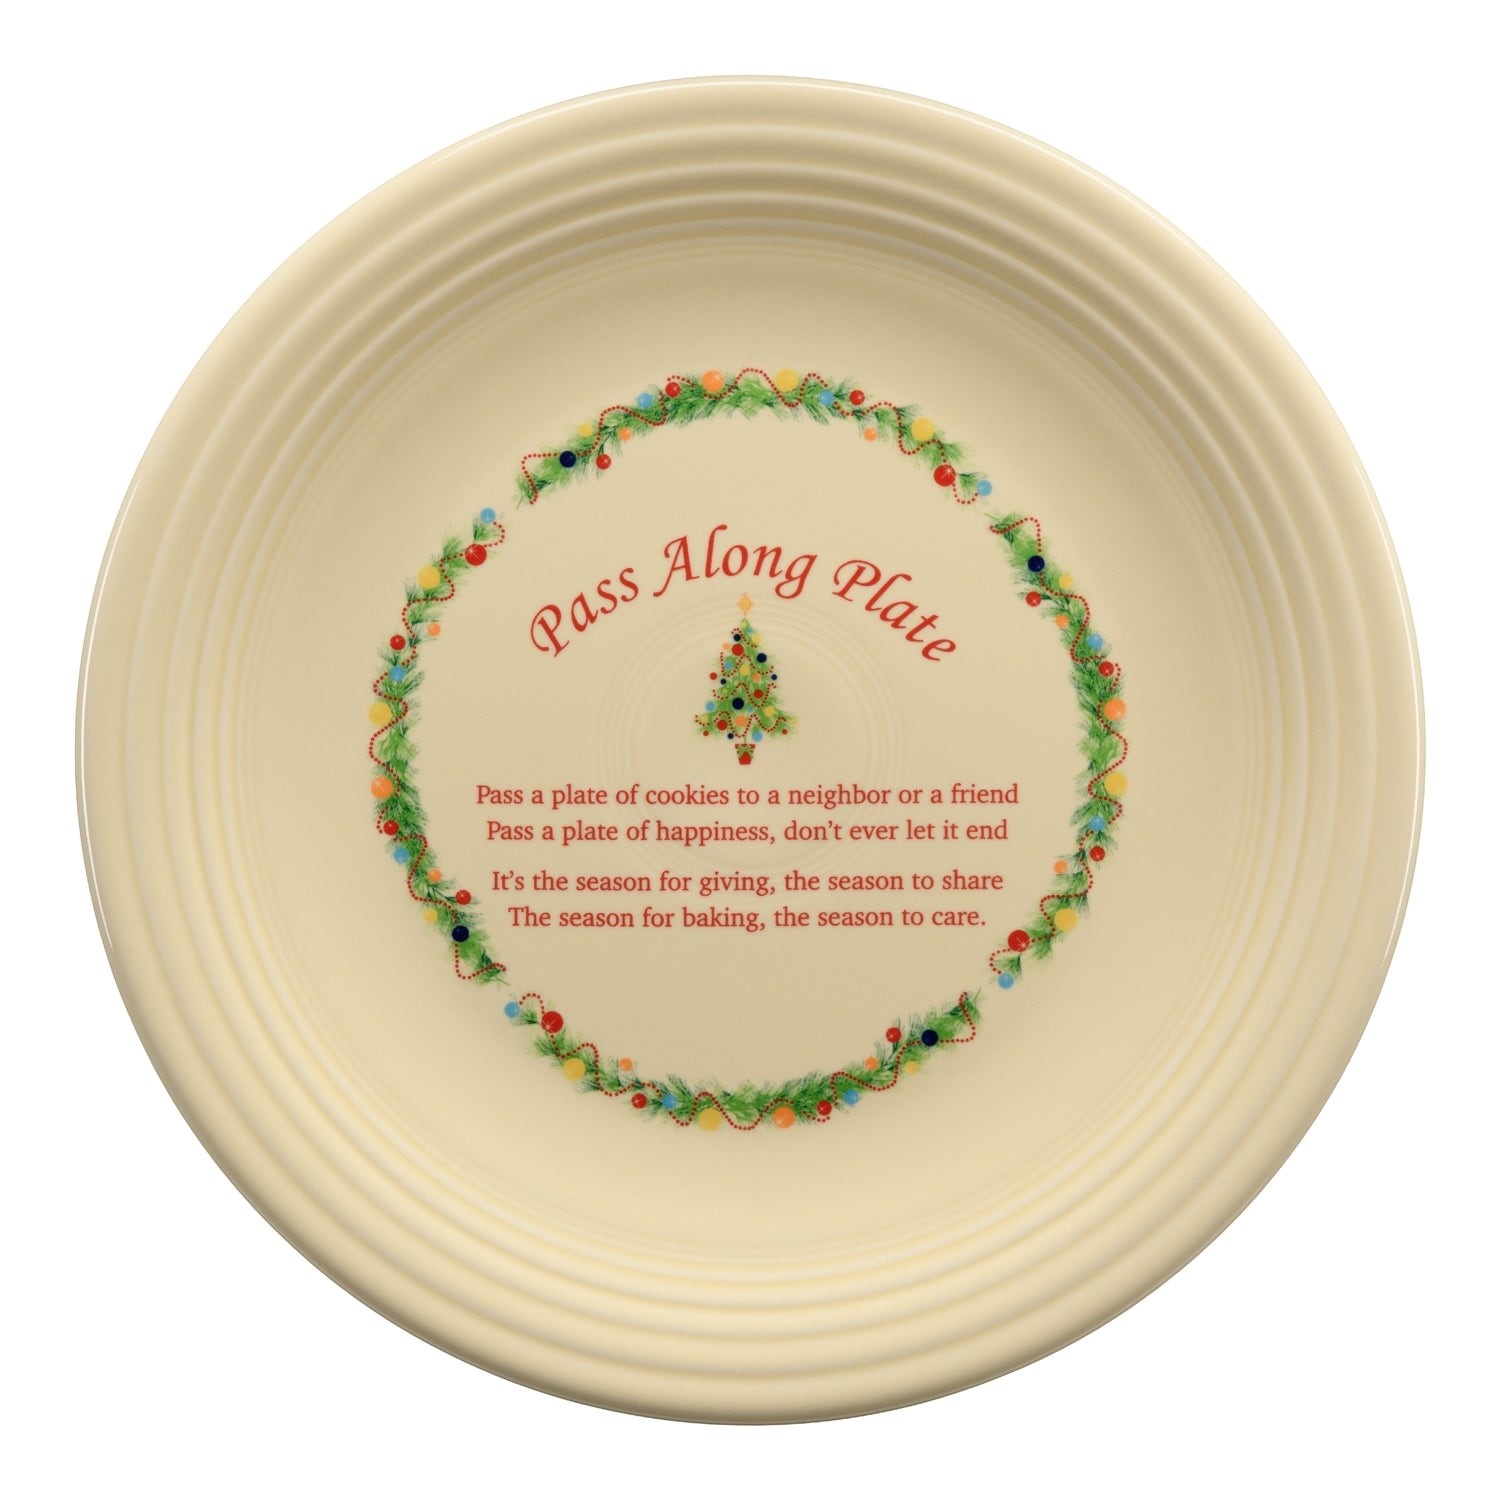 Fiesta Homer Laughlin 2017 Christmas Tree Dinner Ivory Plate Annual Retired NEW 